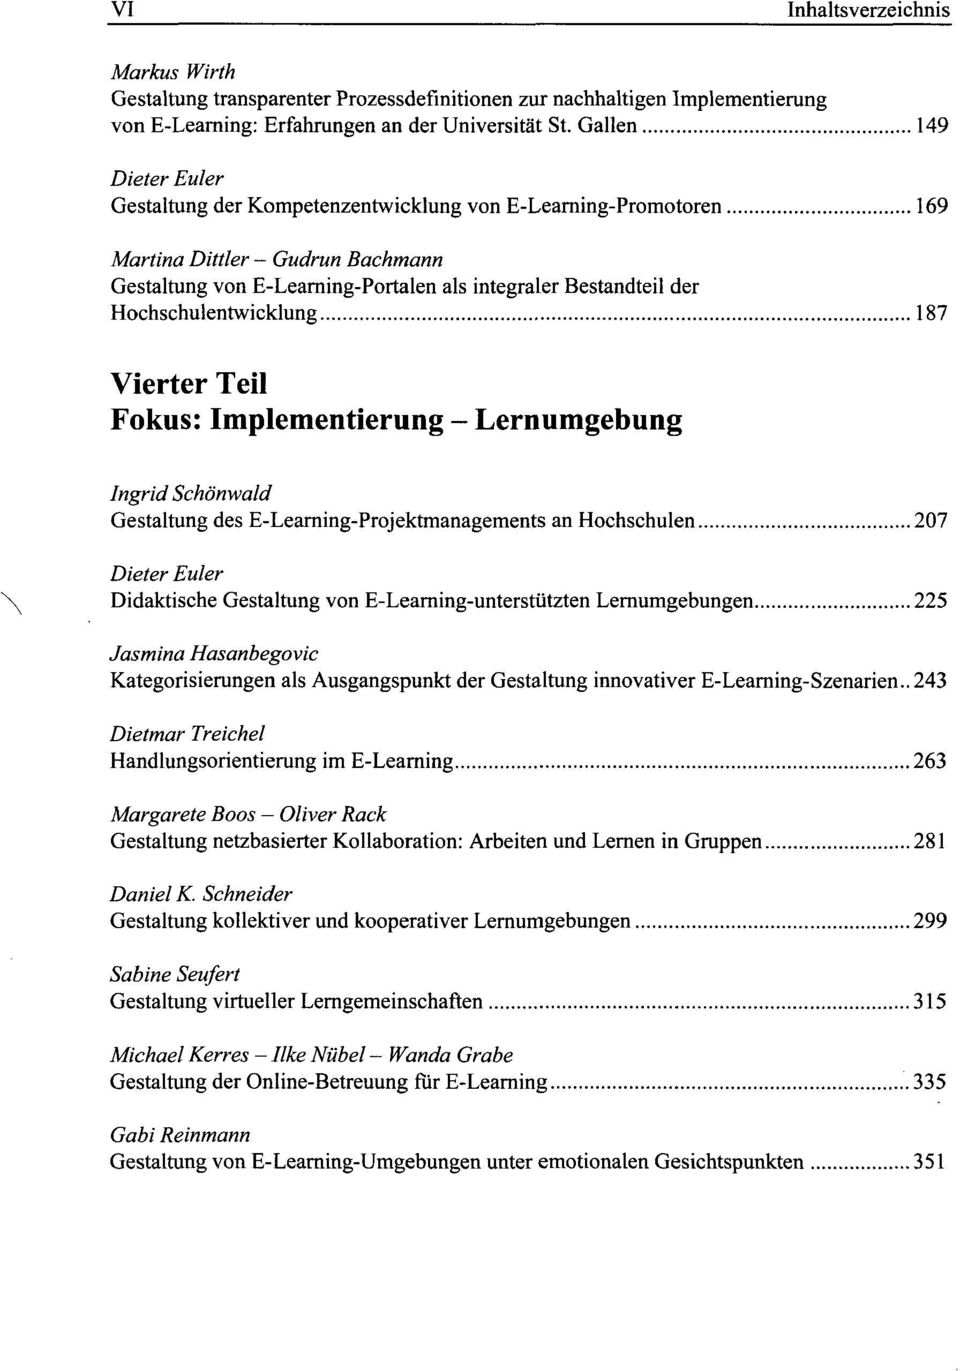 Vierter Teil Fokus: Implementierung - Lernumgebung Ingrid Schonwald Gestaltung des E-Learning-Projektmanagements an Hochschulen 207 Didaktische Gestaltung von E-Learning-unterstiitzten Lernumgebungen